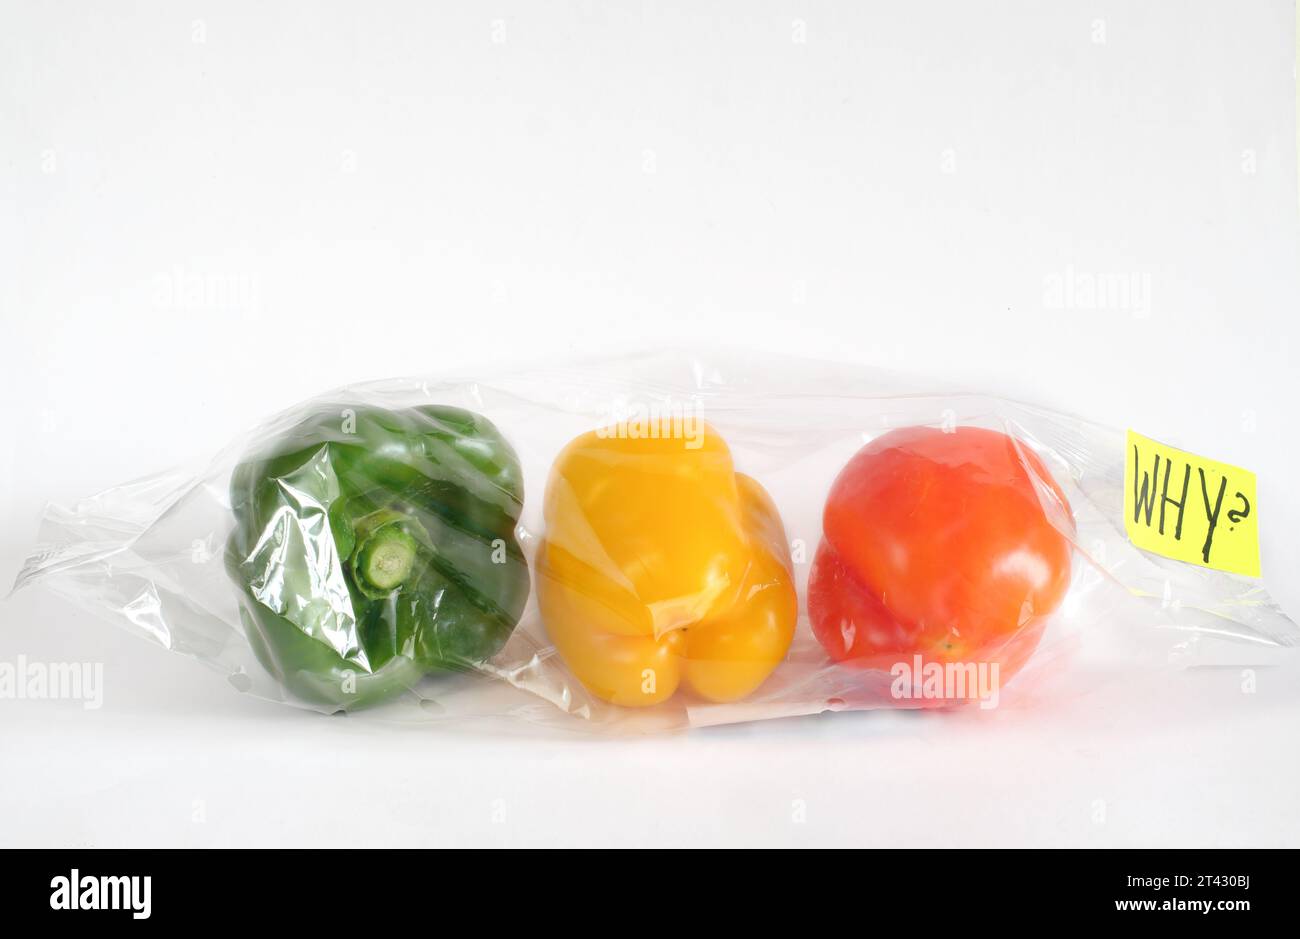 Concepto de alimentos envueltos en plástico contaminante, pimientos en una bolsa de plástico y firma con la leyenda '¿Por qué?' concepto de conservación ambiental Foto de stock